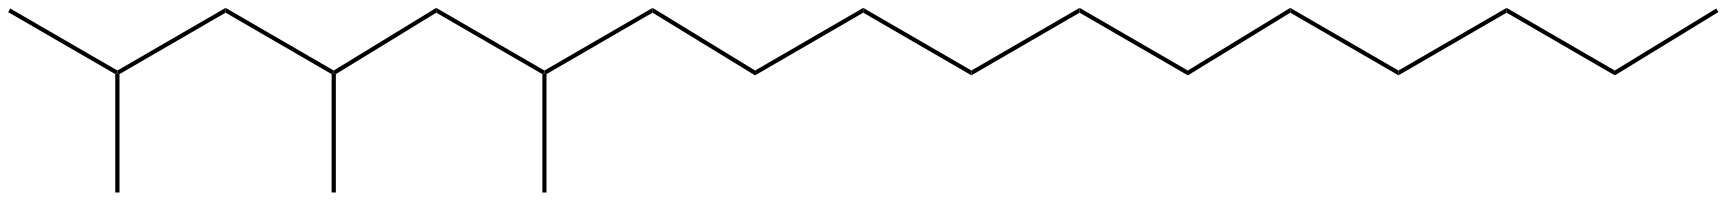 Image of heptadecane, 2,4,6-trimethyl-